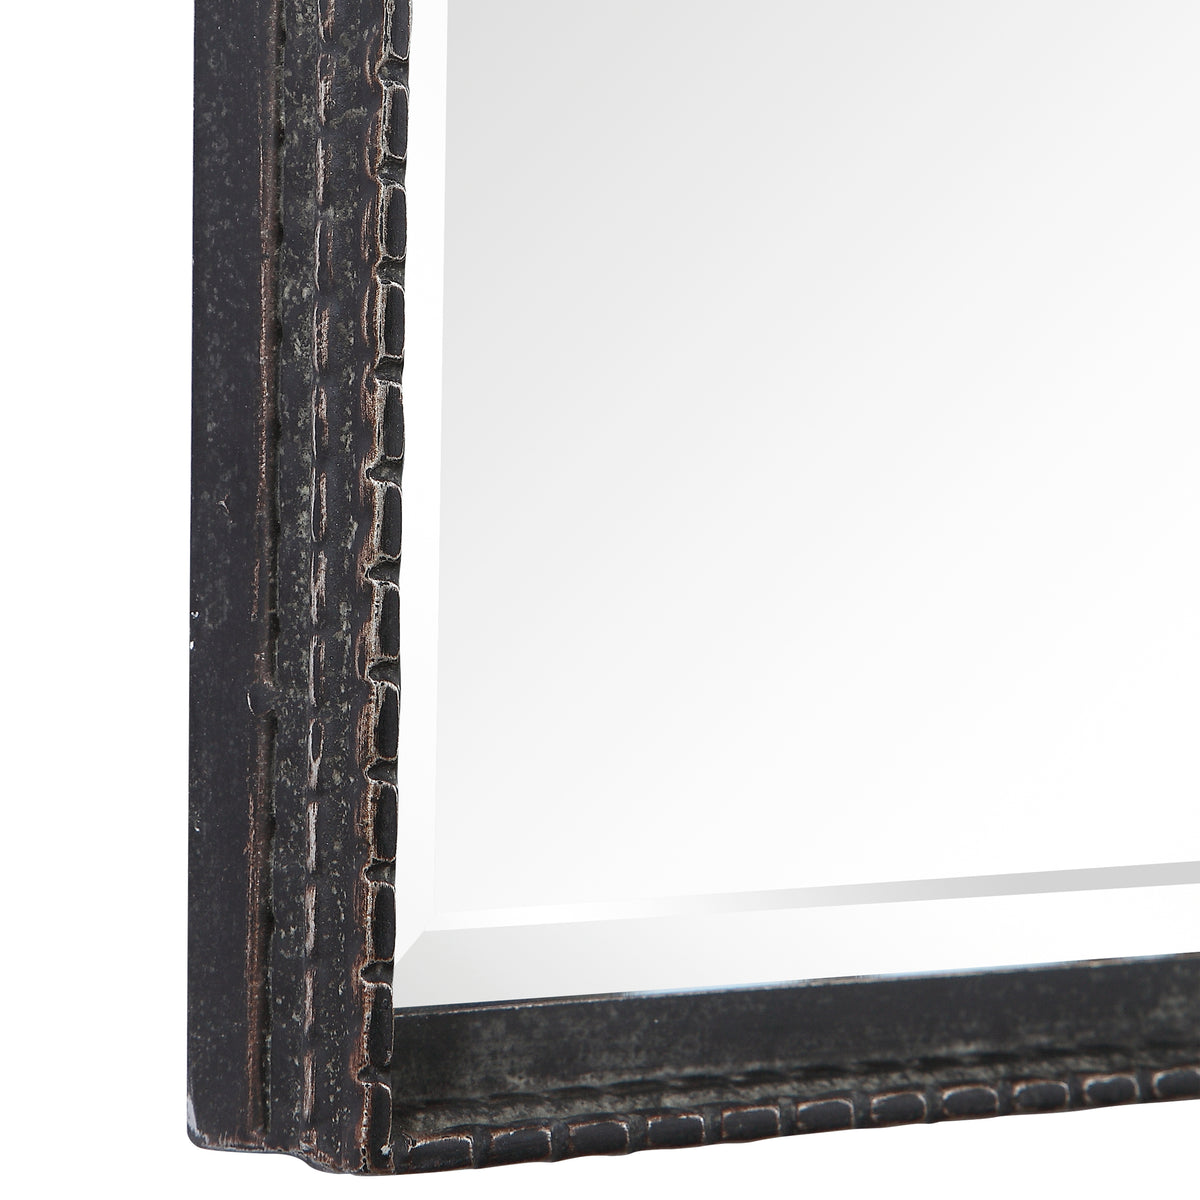 Callan Iron Vanity Mirror